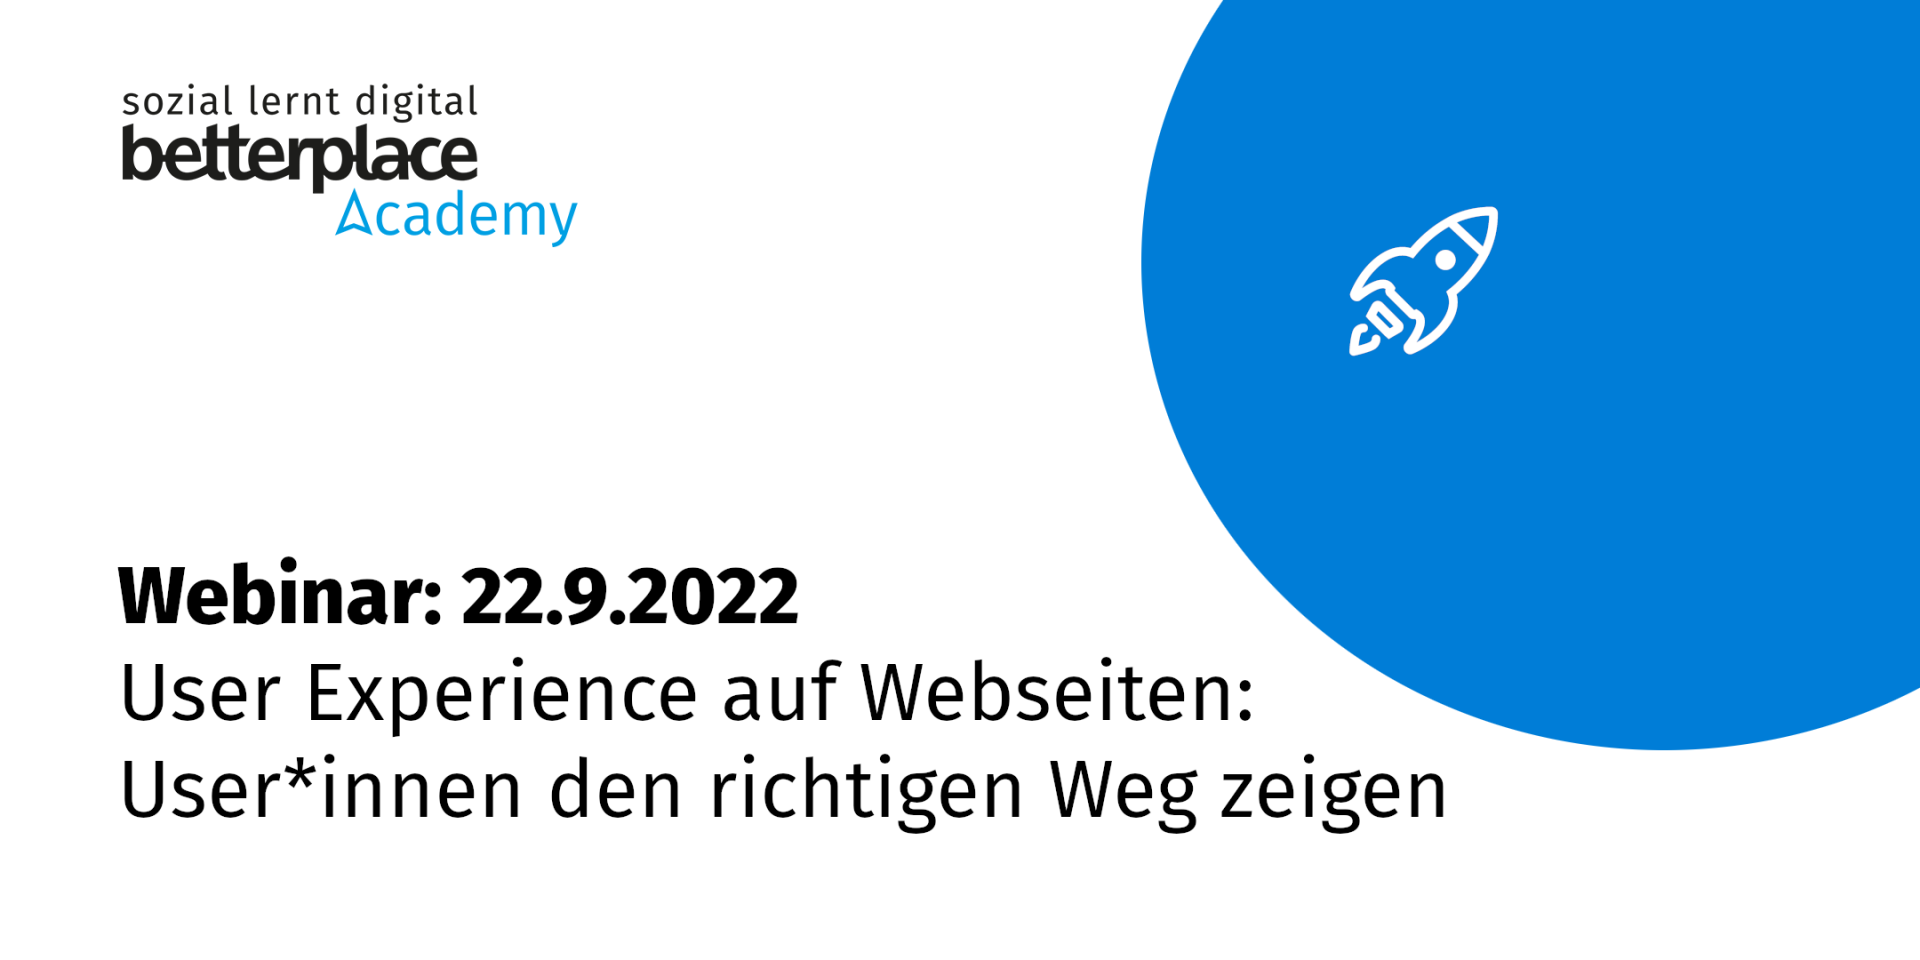 Blauer Planet und weiße Raket mit Logo der betterplace academy sowie Text: Webinar am 22.9. zu User Experience